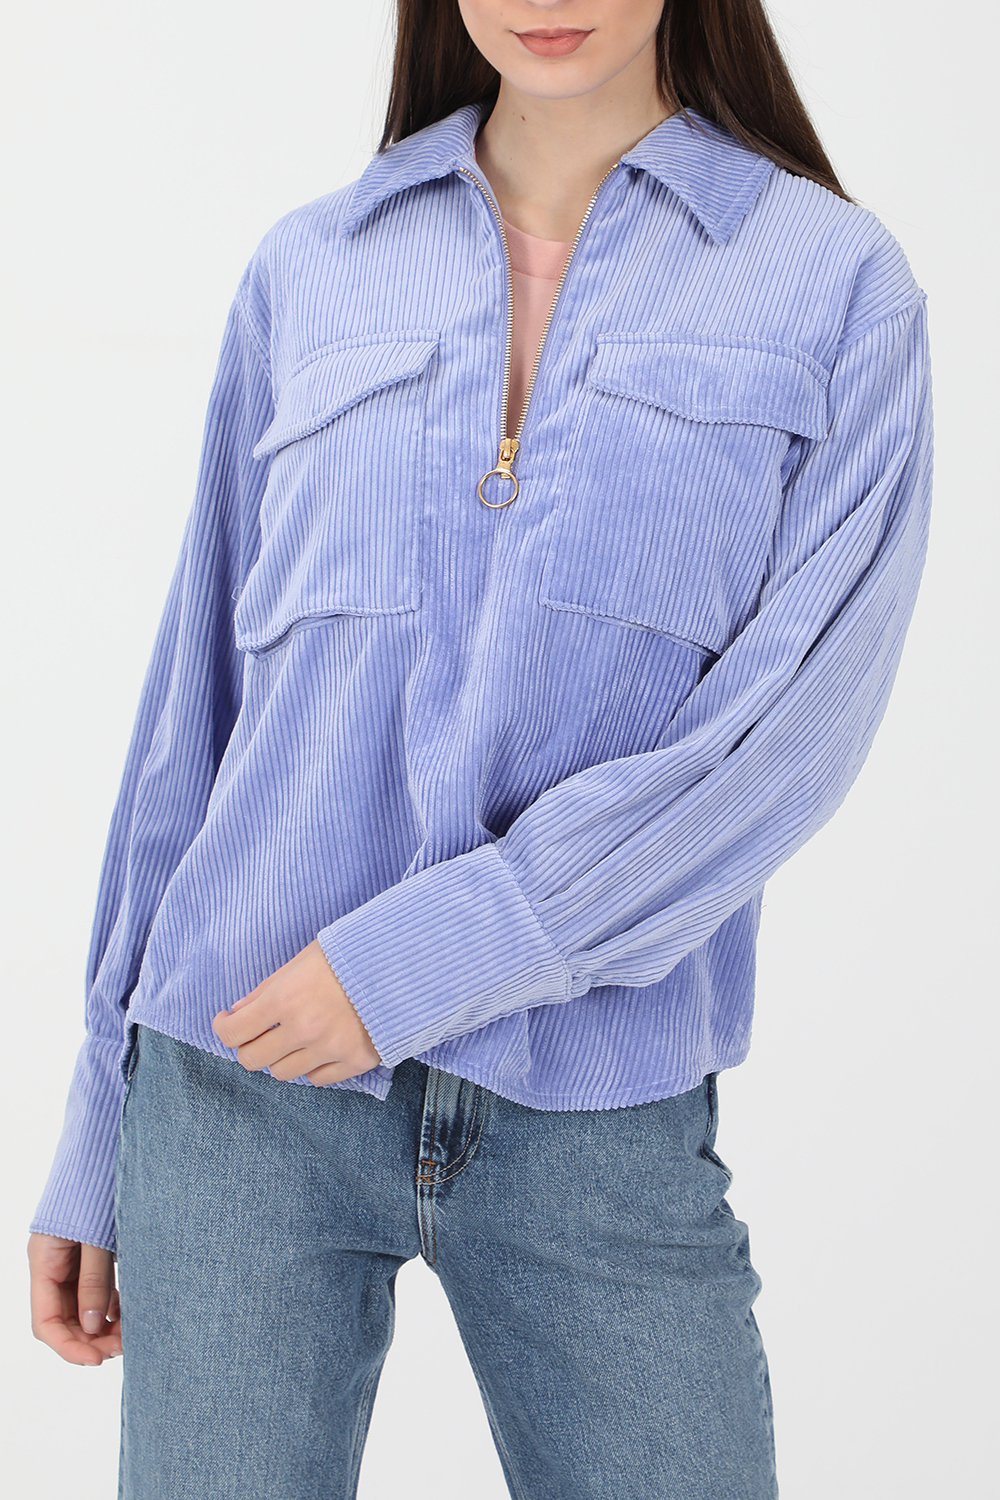 Γυναικεία/Ρούχα/Μπλούζες/Μακρυμάνικες SCOTCH & SODA - Γυναικεία μπλούζα SCOTCH & SODA Utility rib cord top γαλάζια